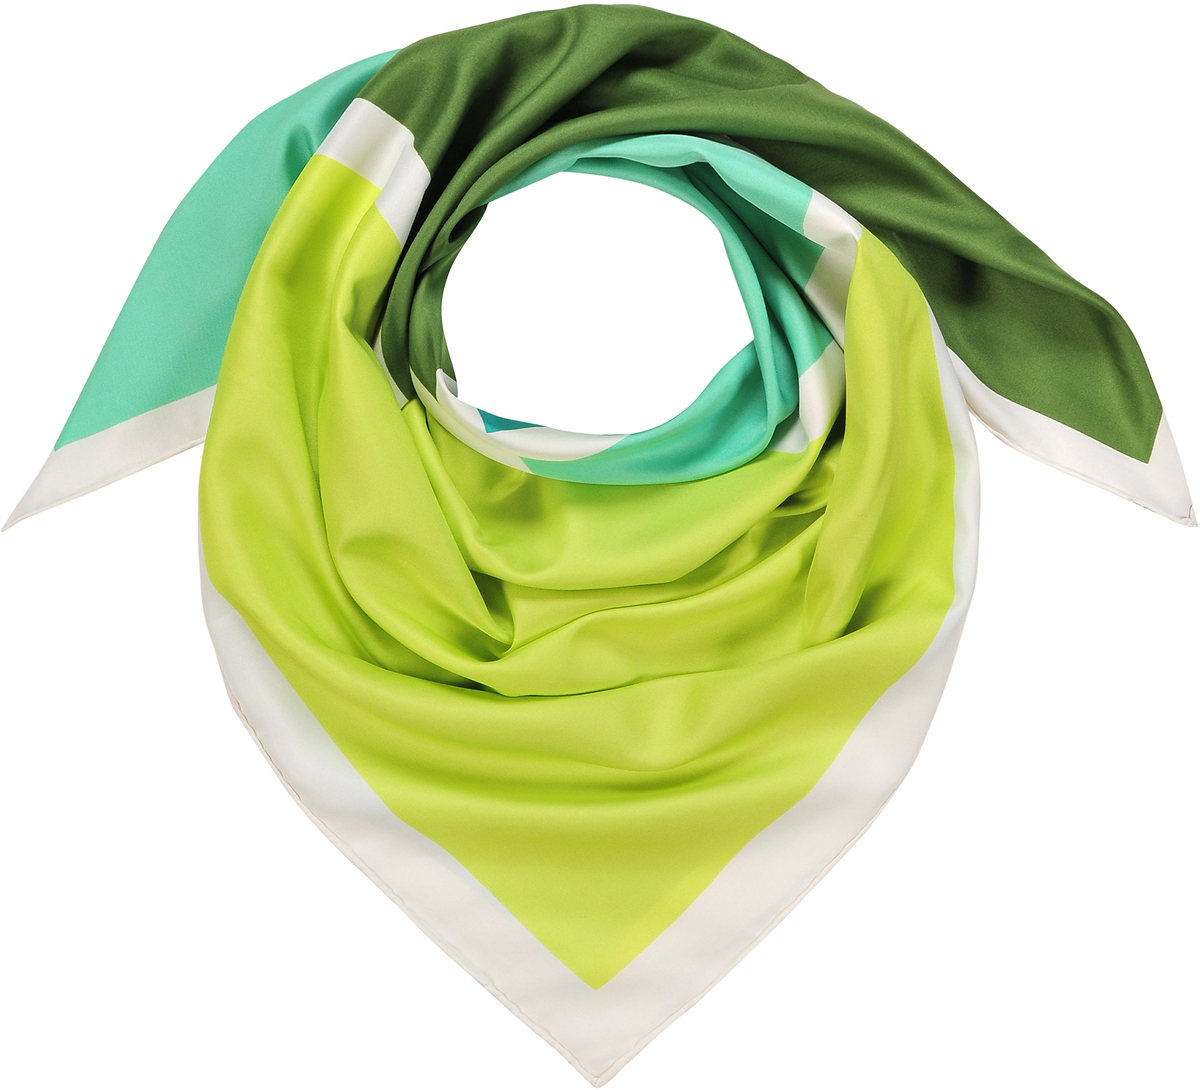 Платок женский Модные истории, цвет: зеленый, салатовый, белый. 23/0545/243. Размер 90 см х 90 см